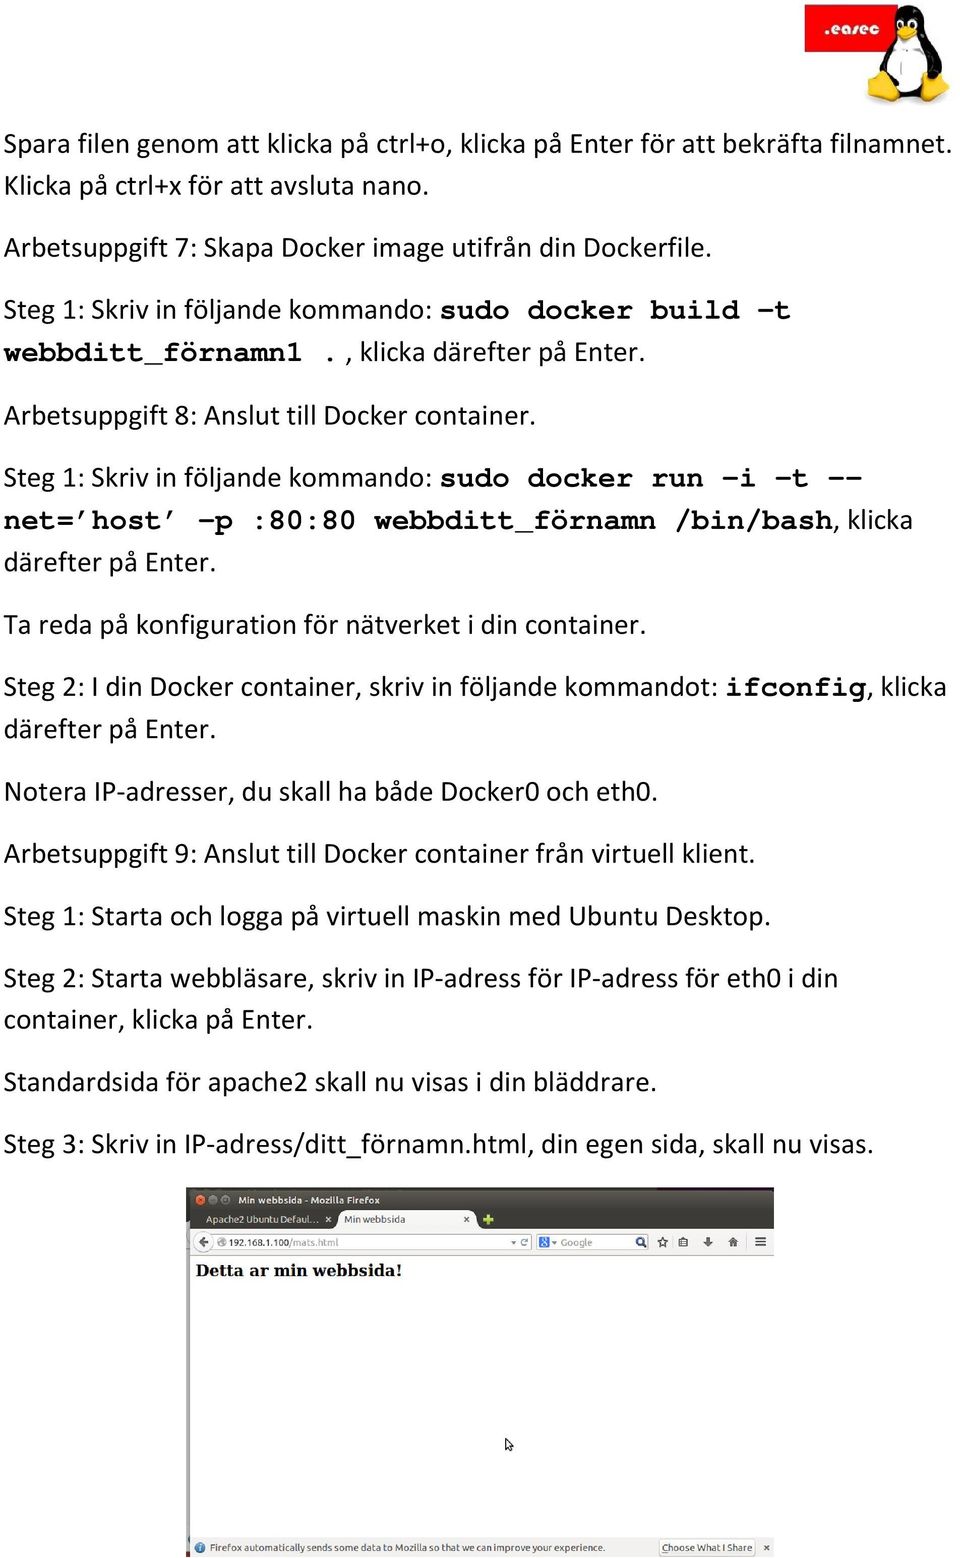 Steg 1: Skriv in följande kommando: sudo docker run i t -- net= host p :80:80 webbditt_förnamn /bin/bash, klicka Ta reda på konfiguration för nätverket i din container.